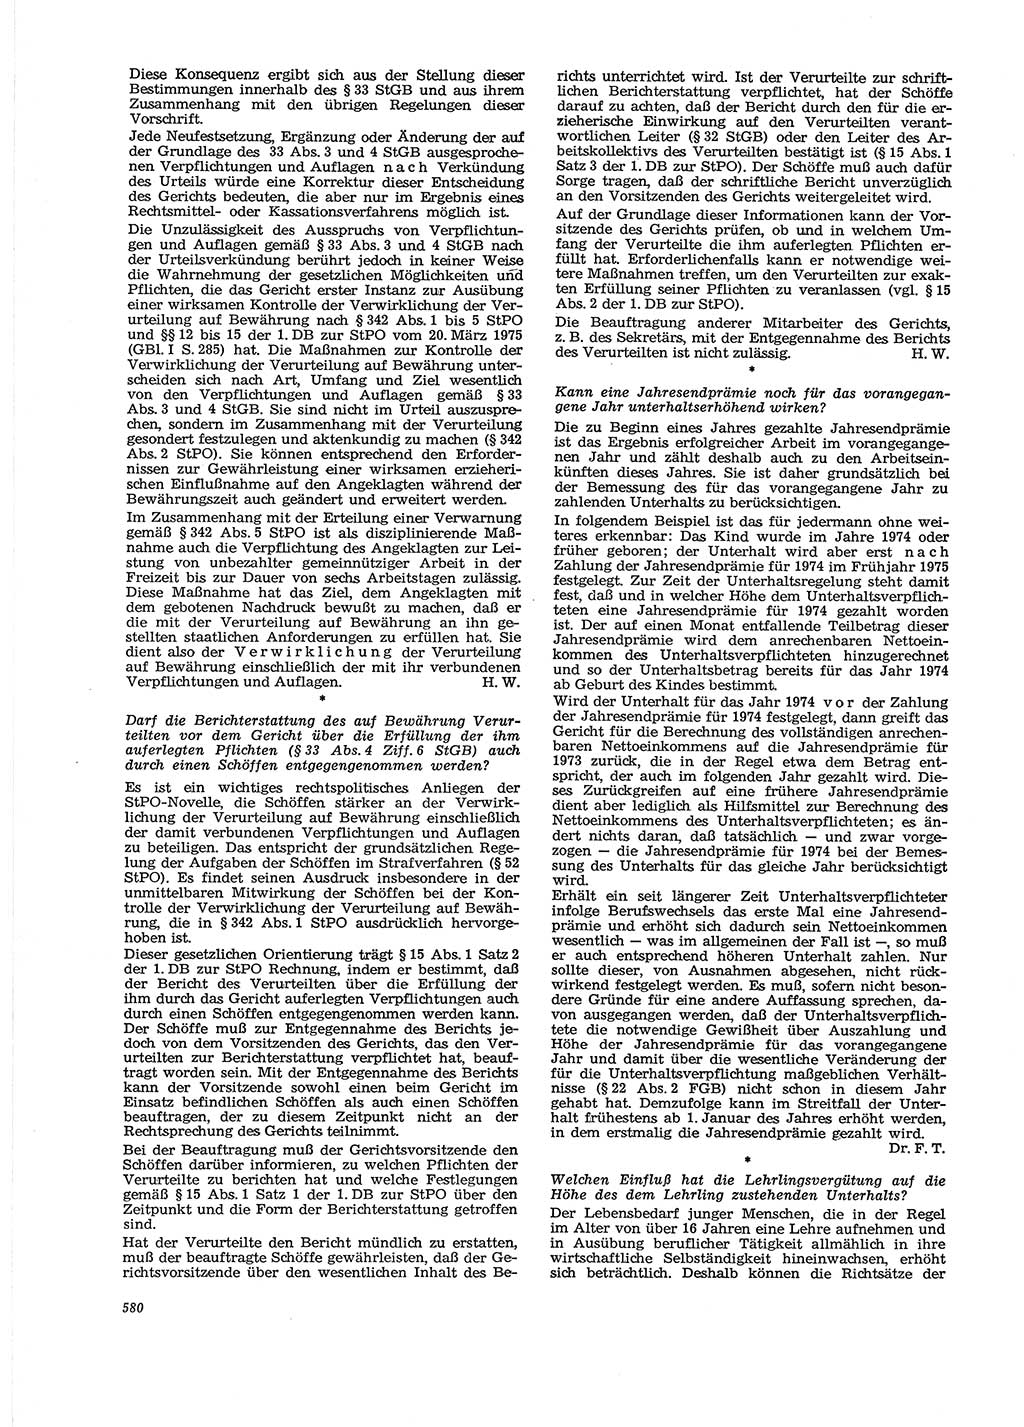 Neue Justiz (NJ), Zeitschrift für Recht und Rechtswissenschaft [Deutsche Demokratische Republik (DDR)], 29. Jahrgang 1975, Seite 580 (NJ DDR 1975, S. 580)